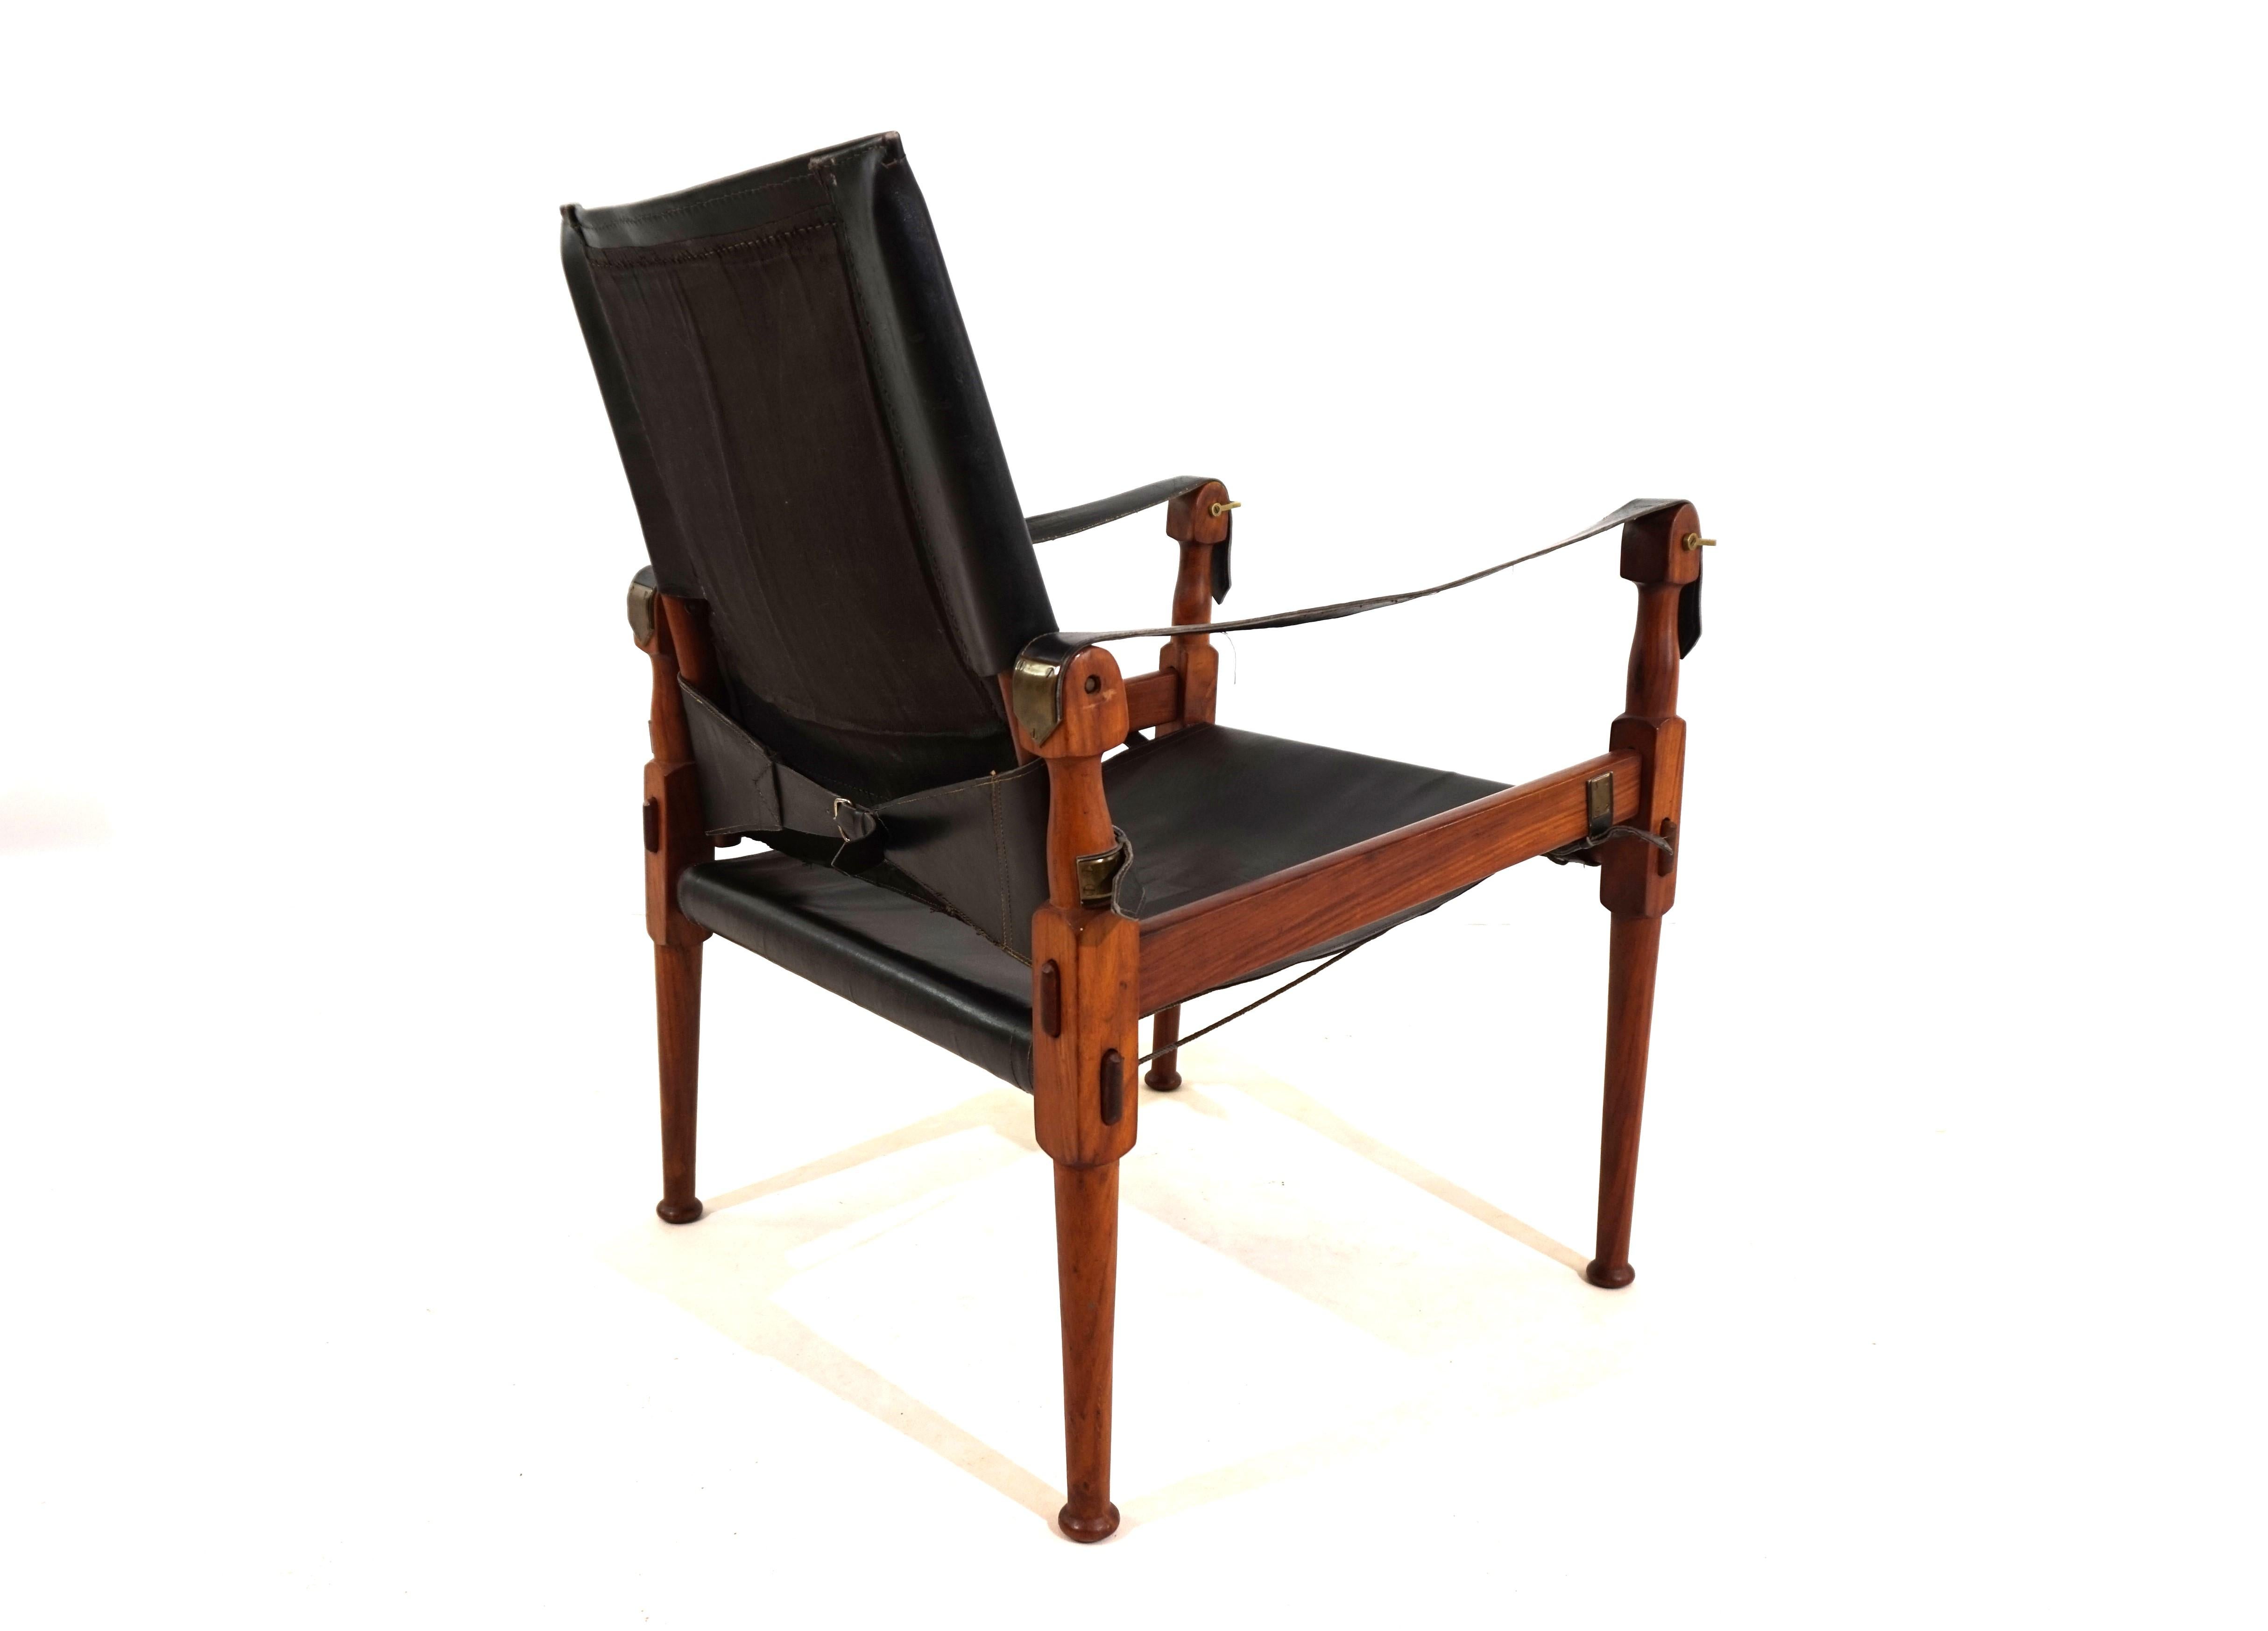 Cette chaise Safari originale de la société Hayat Roorkee Campaigner, datant des années 60, est en très bon état. Le cuir noir ne présente pratiquement aucune trace d'usure visible. Les cadres en bois, faits d'un magnifique teck, sont en très bon